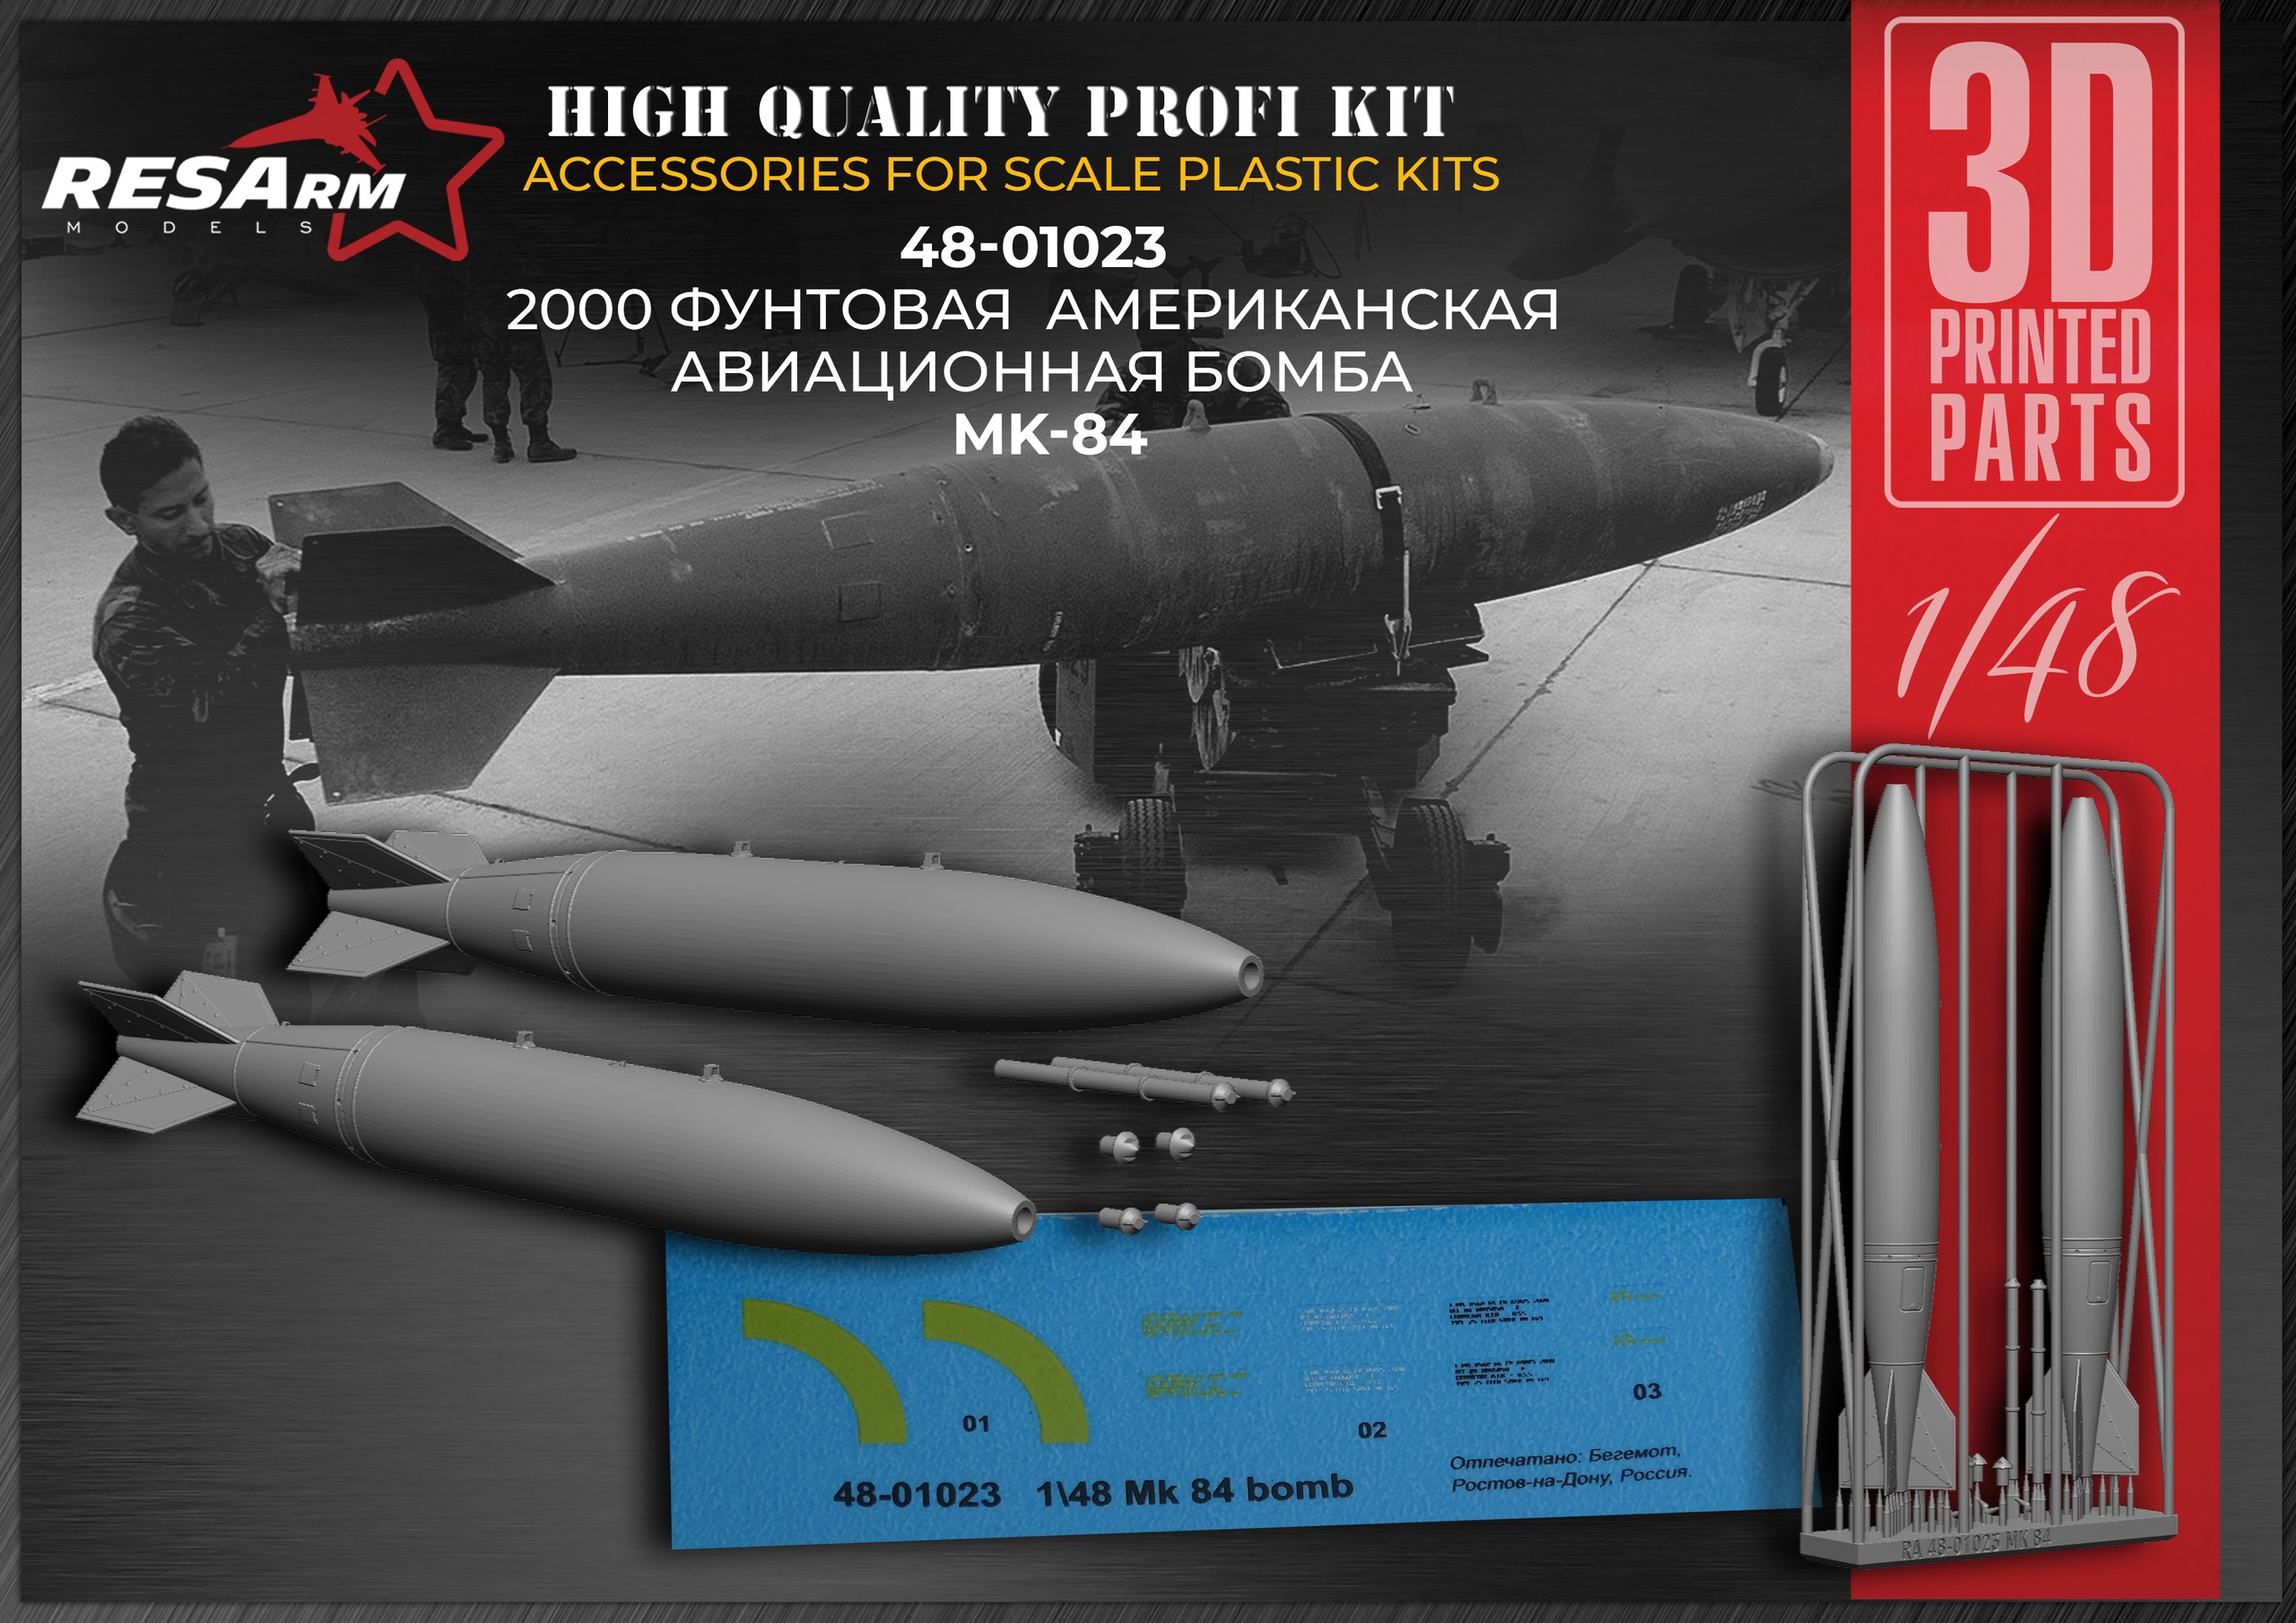 Дополнения из смолы 1/48 2000 фунтовая американская авиационная бомба Mk-84 (RESArm)